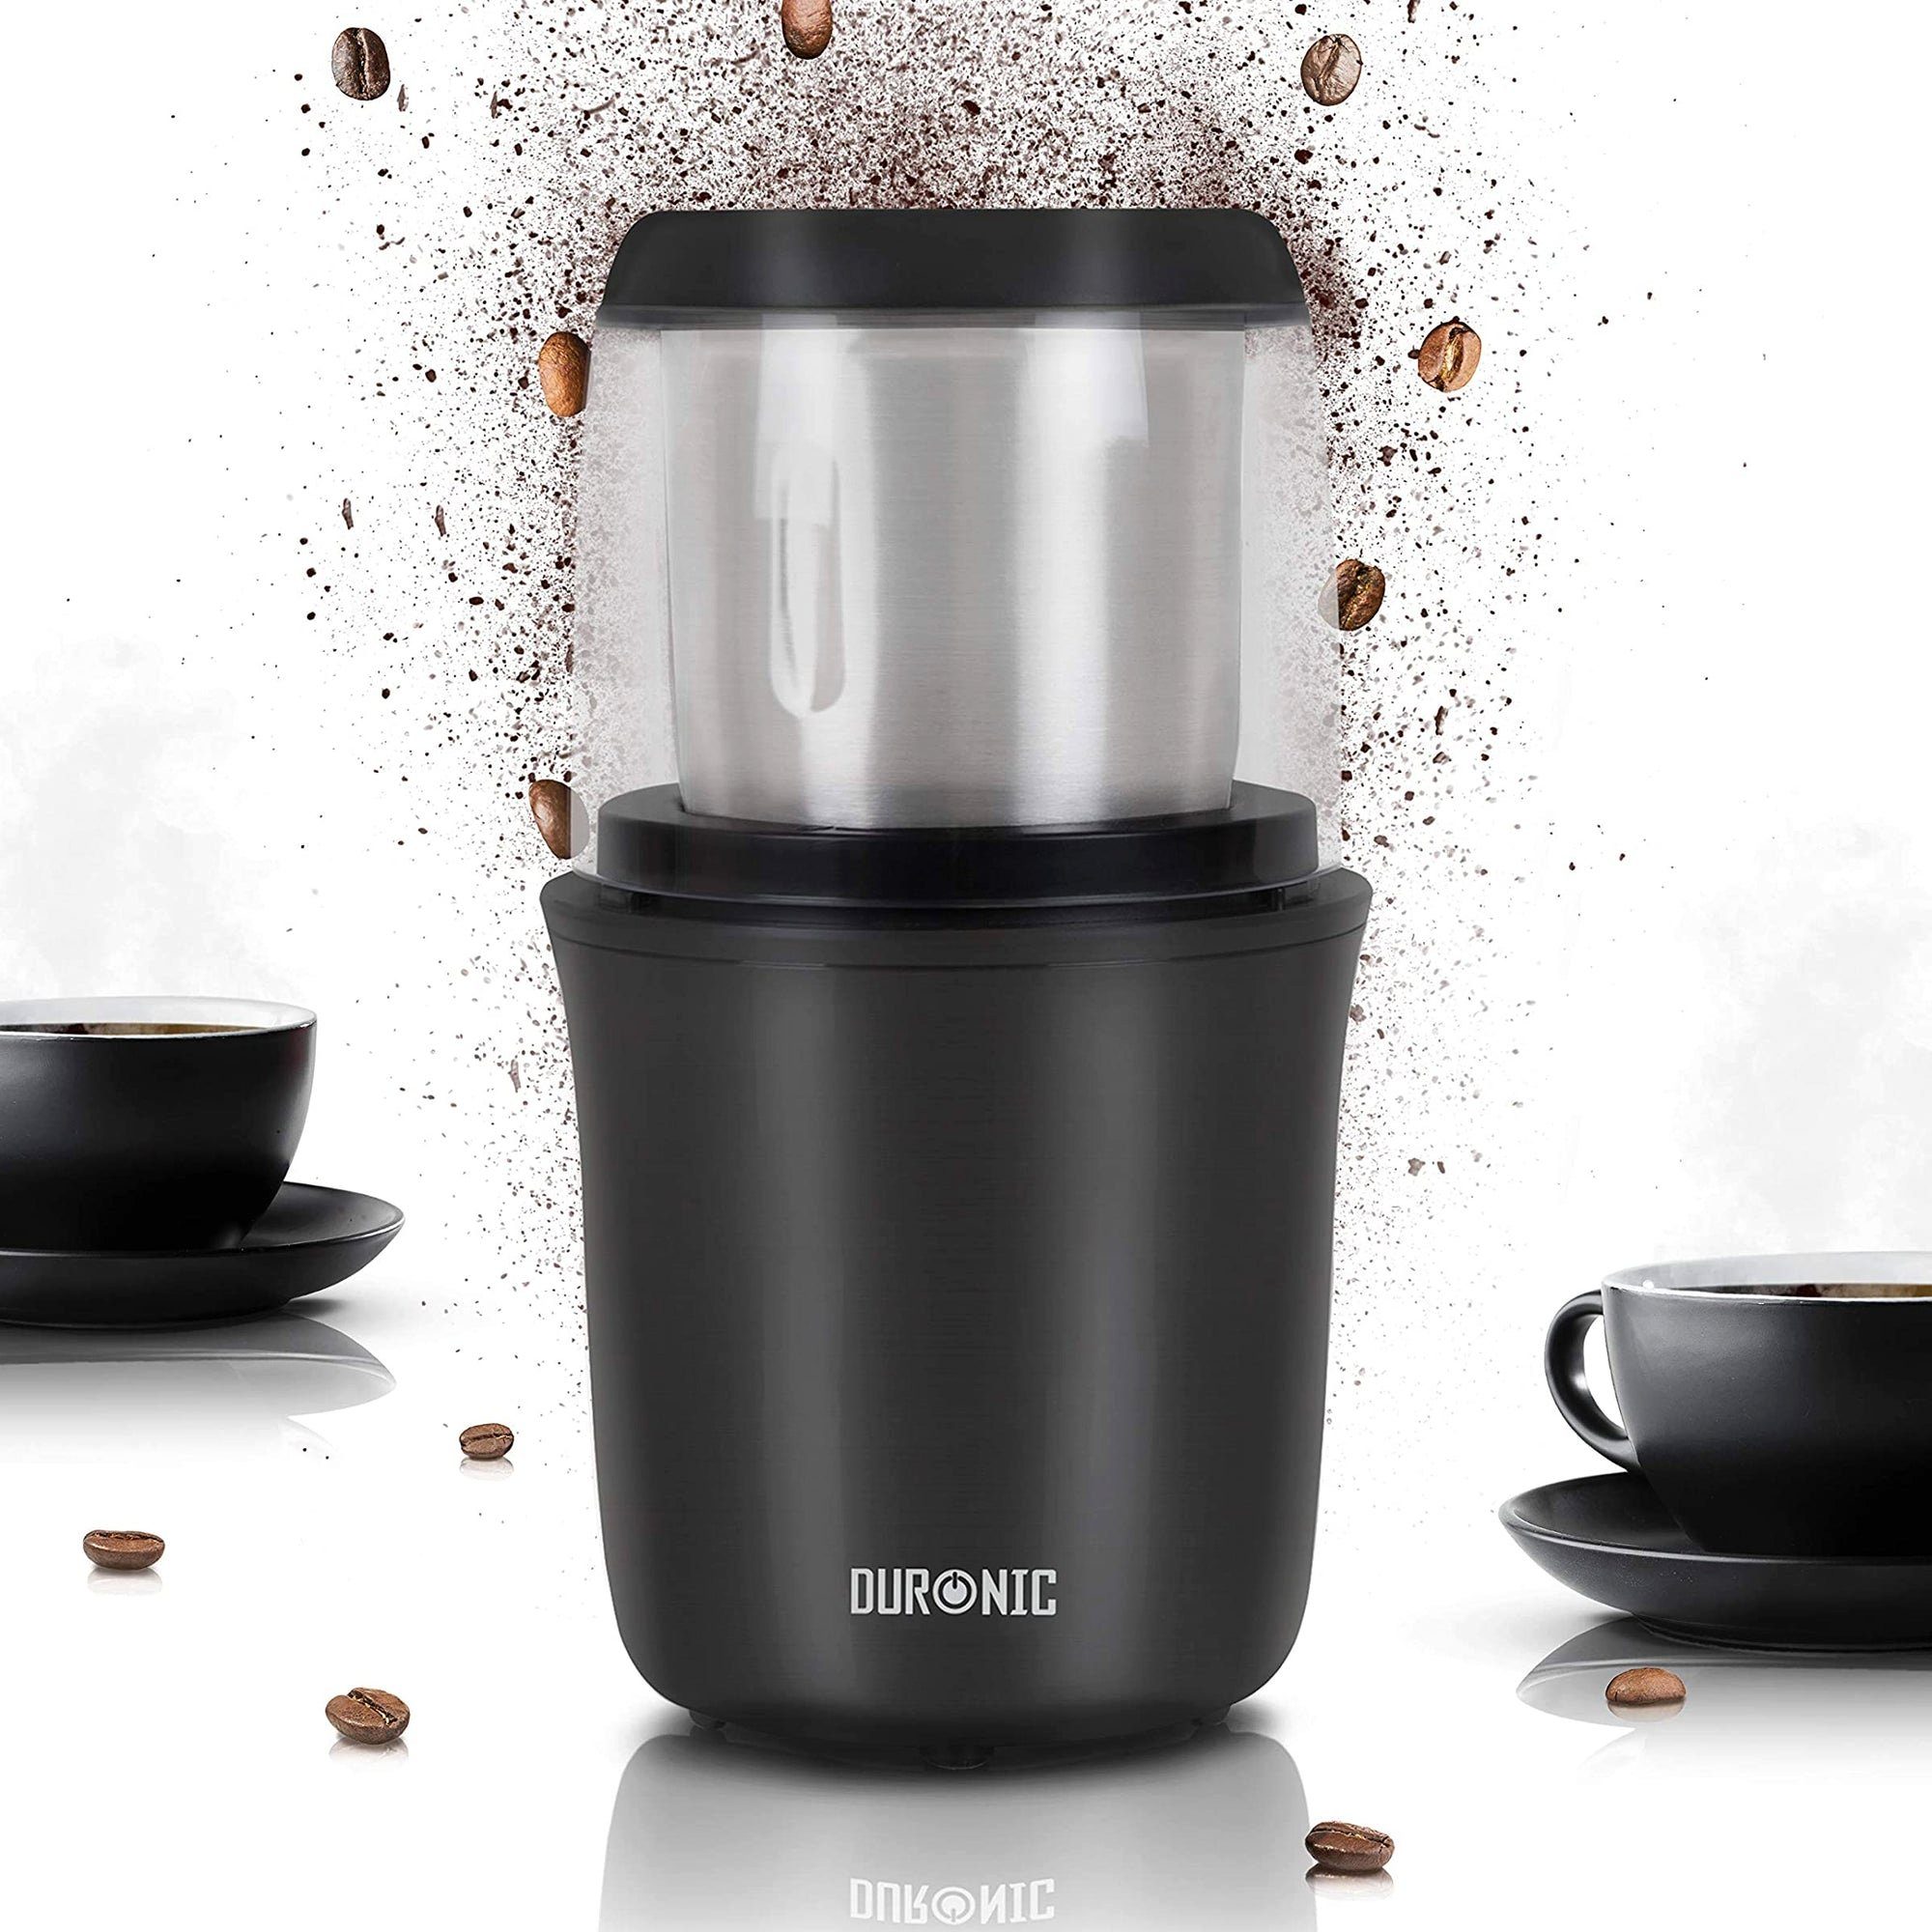 Duronic Kaffeemühle, CG250 Elektrische Propellermühle, Kaffeemühle mit 250 W, 75g Fassungsvermögen für 12 Tassen, Gewürzmühle mit Edelstahlklingen, Touch-Sensor, Für Kaffee Nüsse Gewürze Kaffeebohnen geröstet